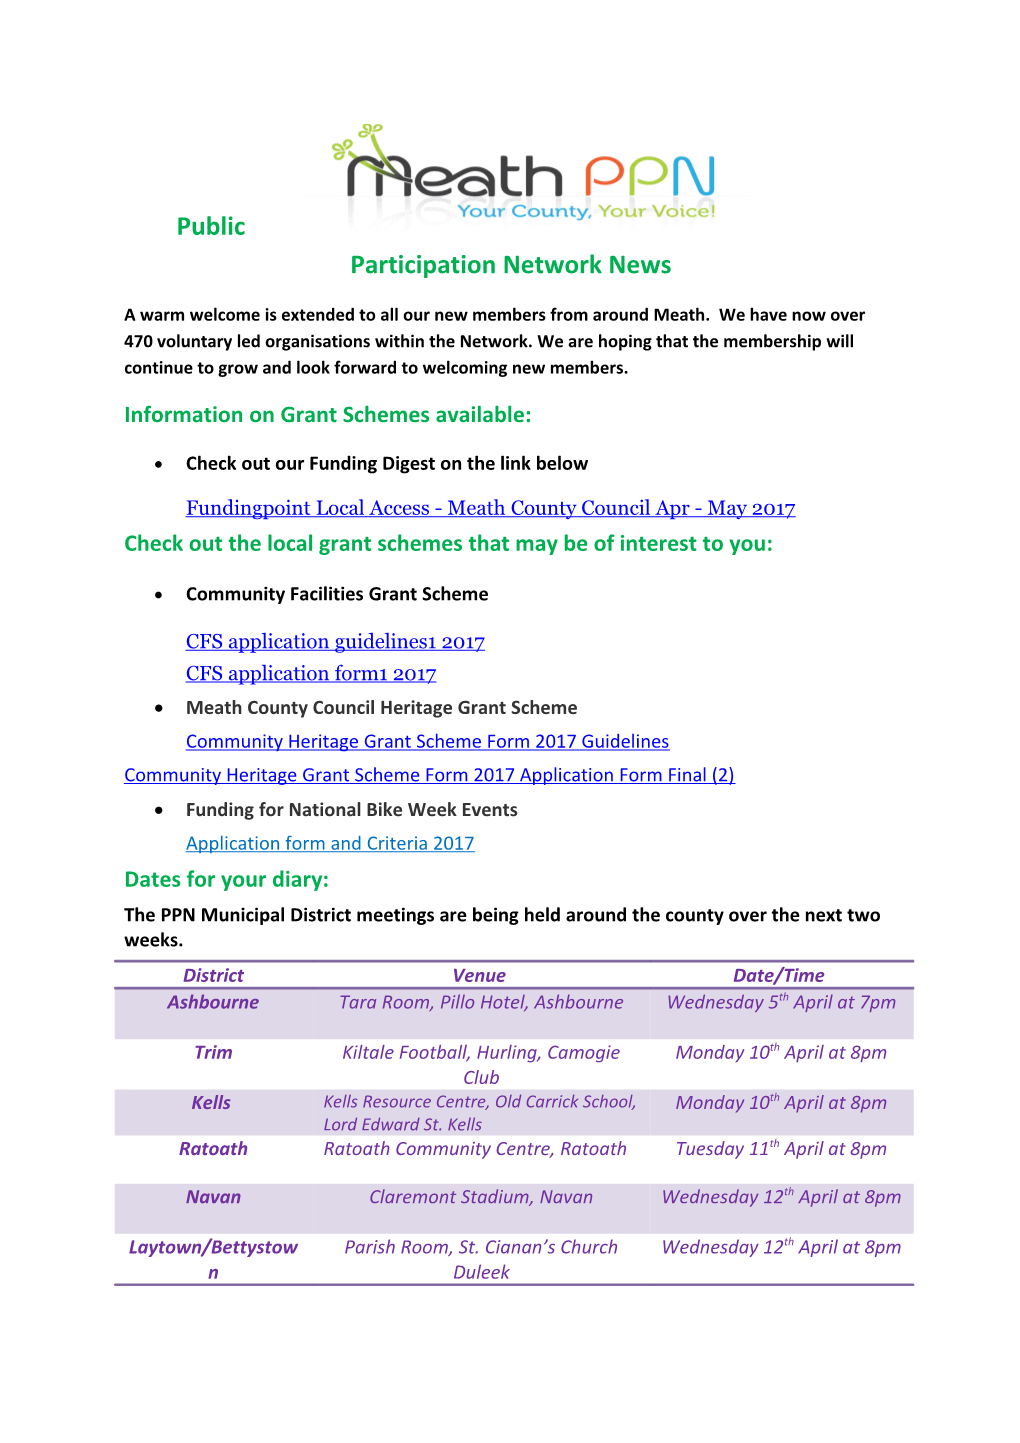 Public Participation Network News